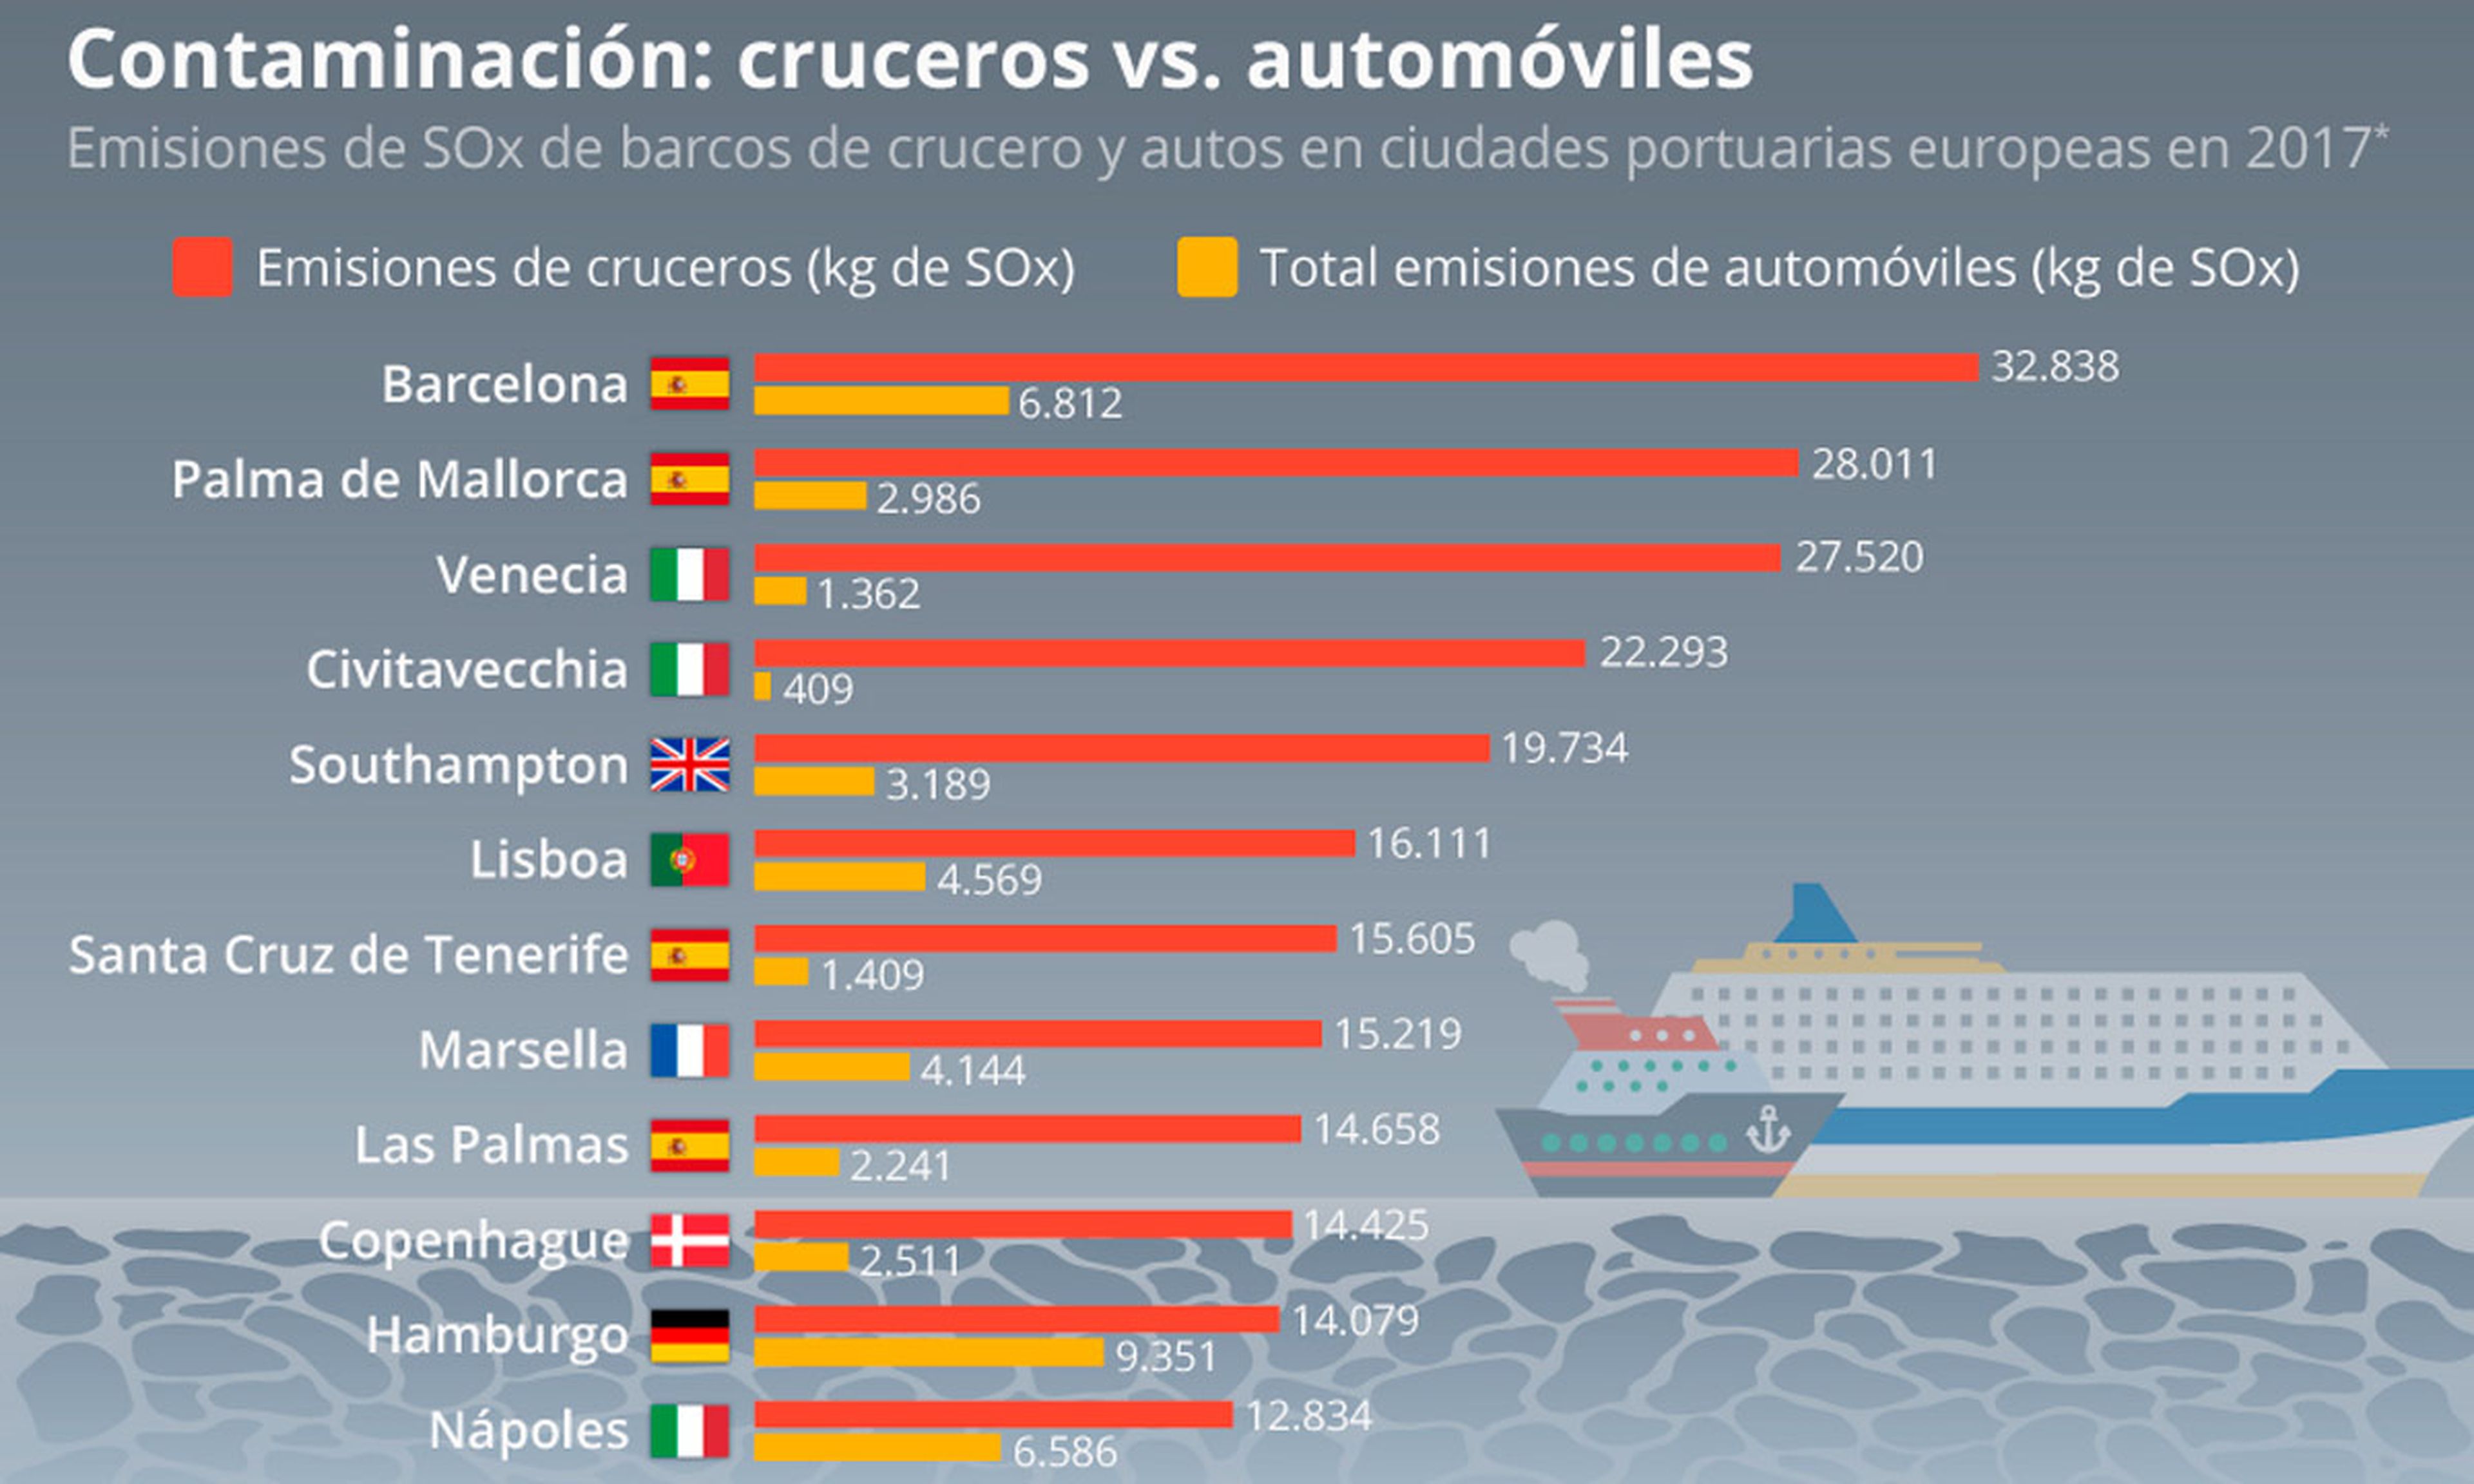 Cuatro ciudades españolas, entre las más afectadas por esta contaminación.